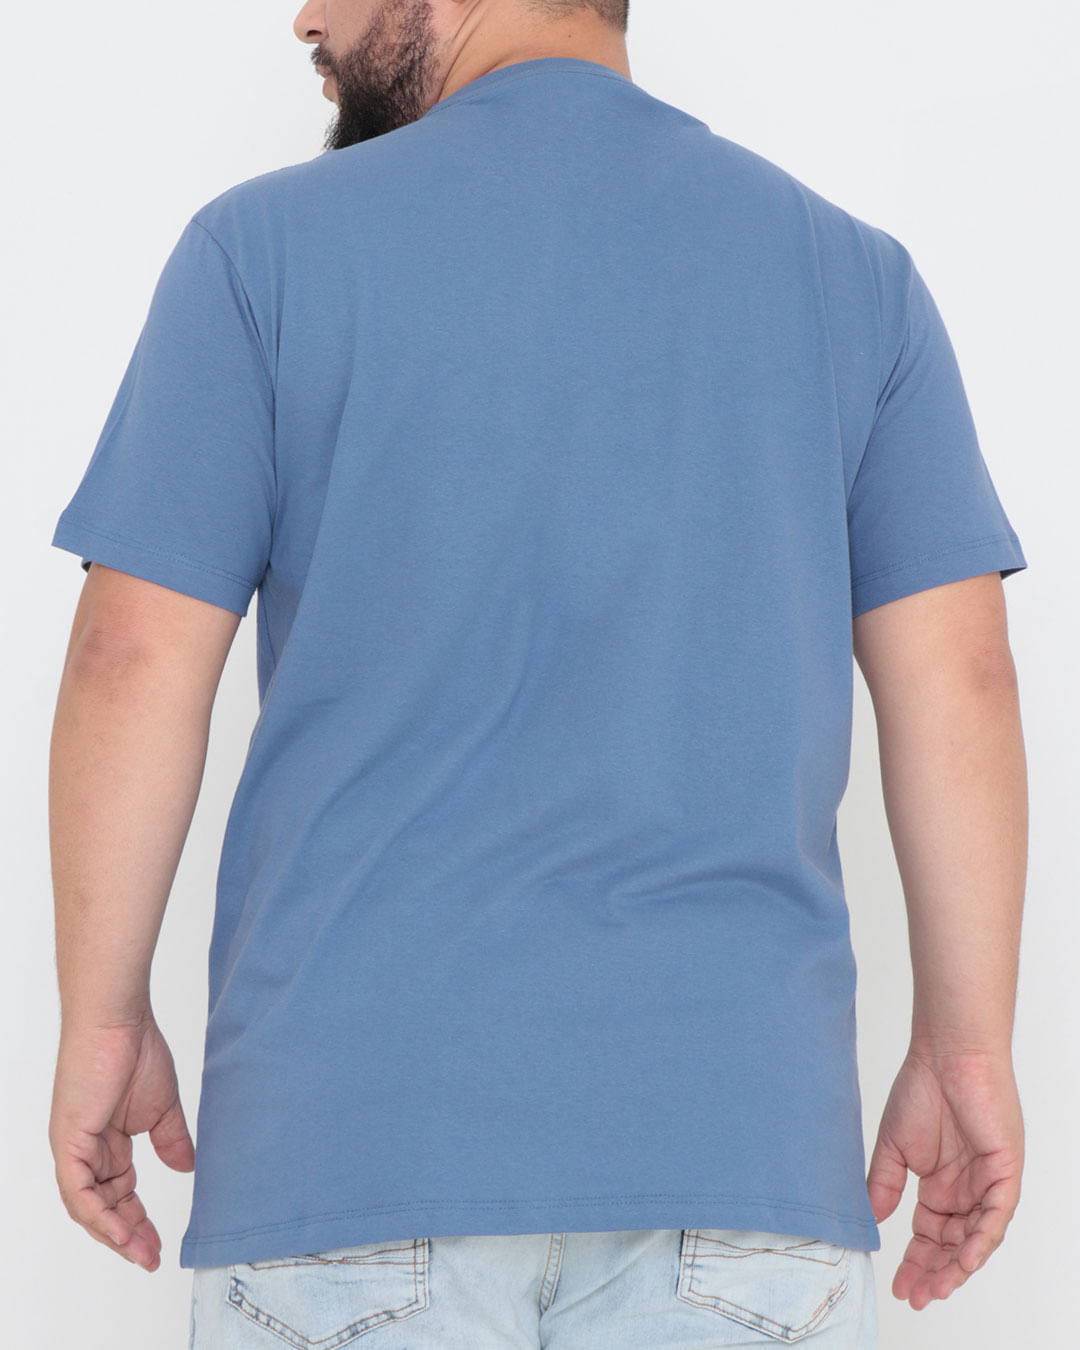 Camiseta-Basica-Cpm1-61100-Azul-Jeans-Pl---Azul-Medio